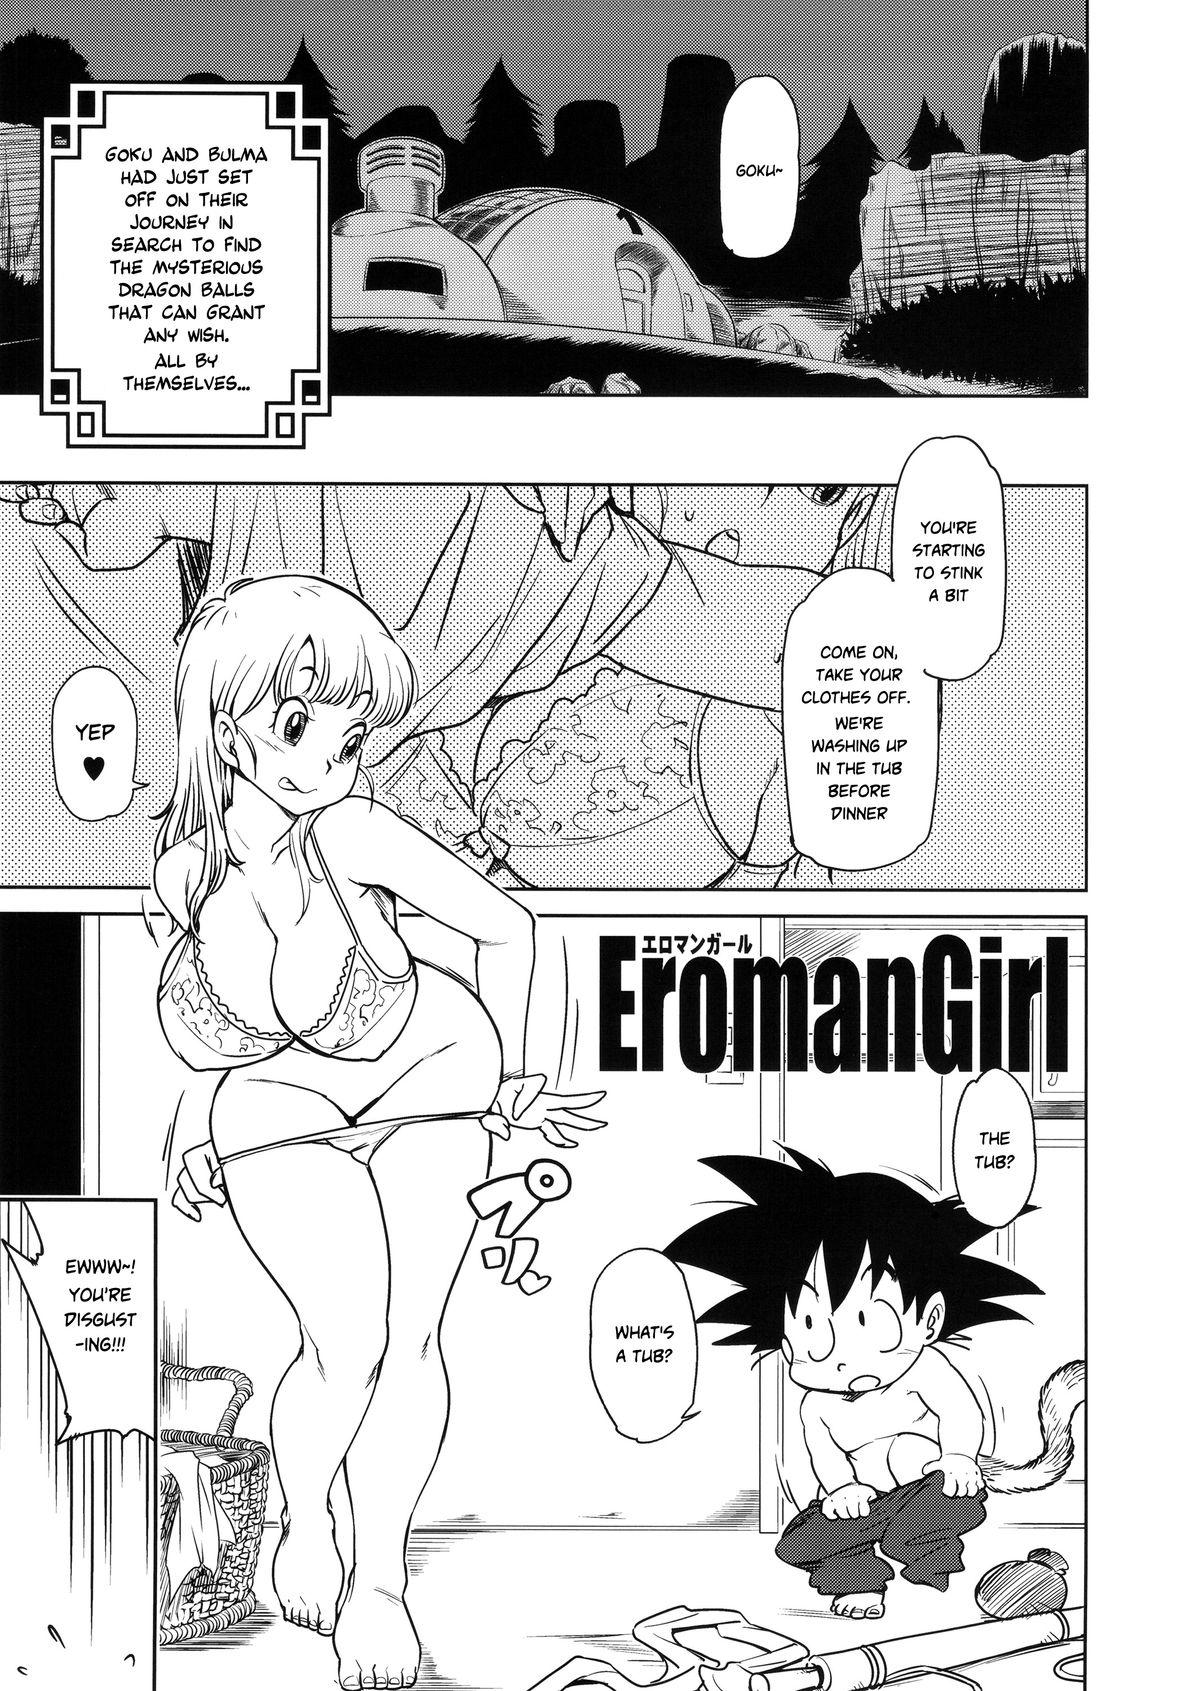 Play Eromangirl - Dragon ball Group - Page 2